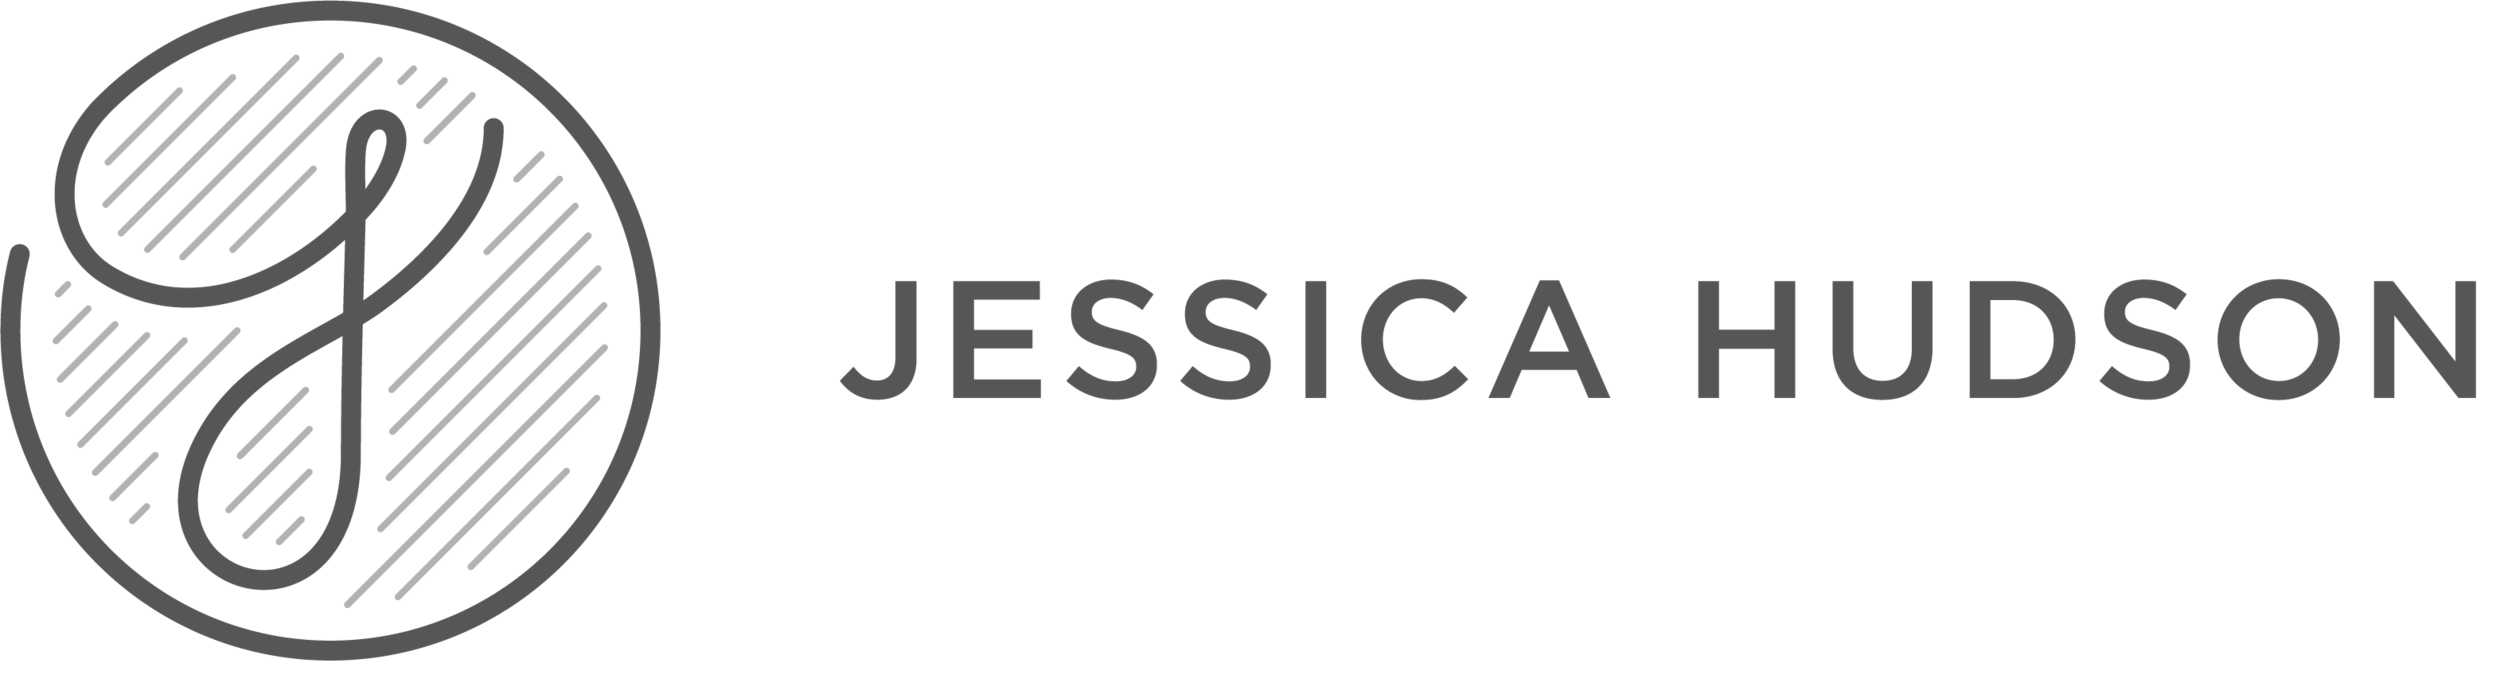 Jessica Hudson